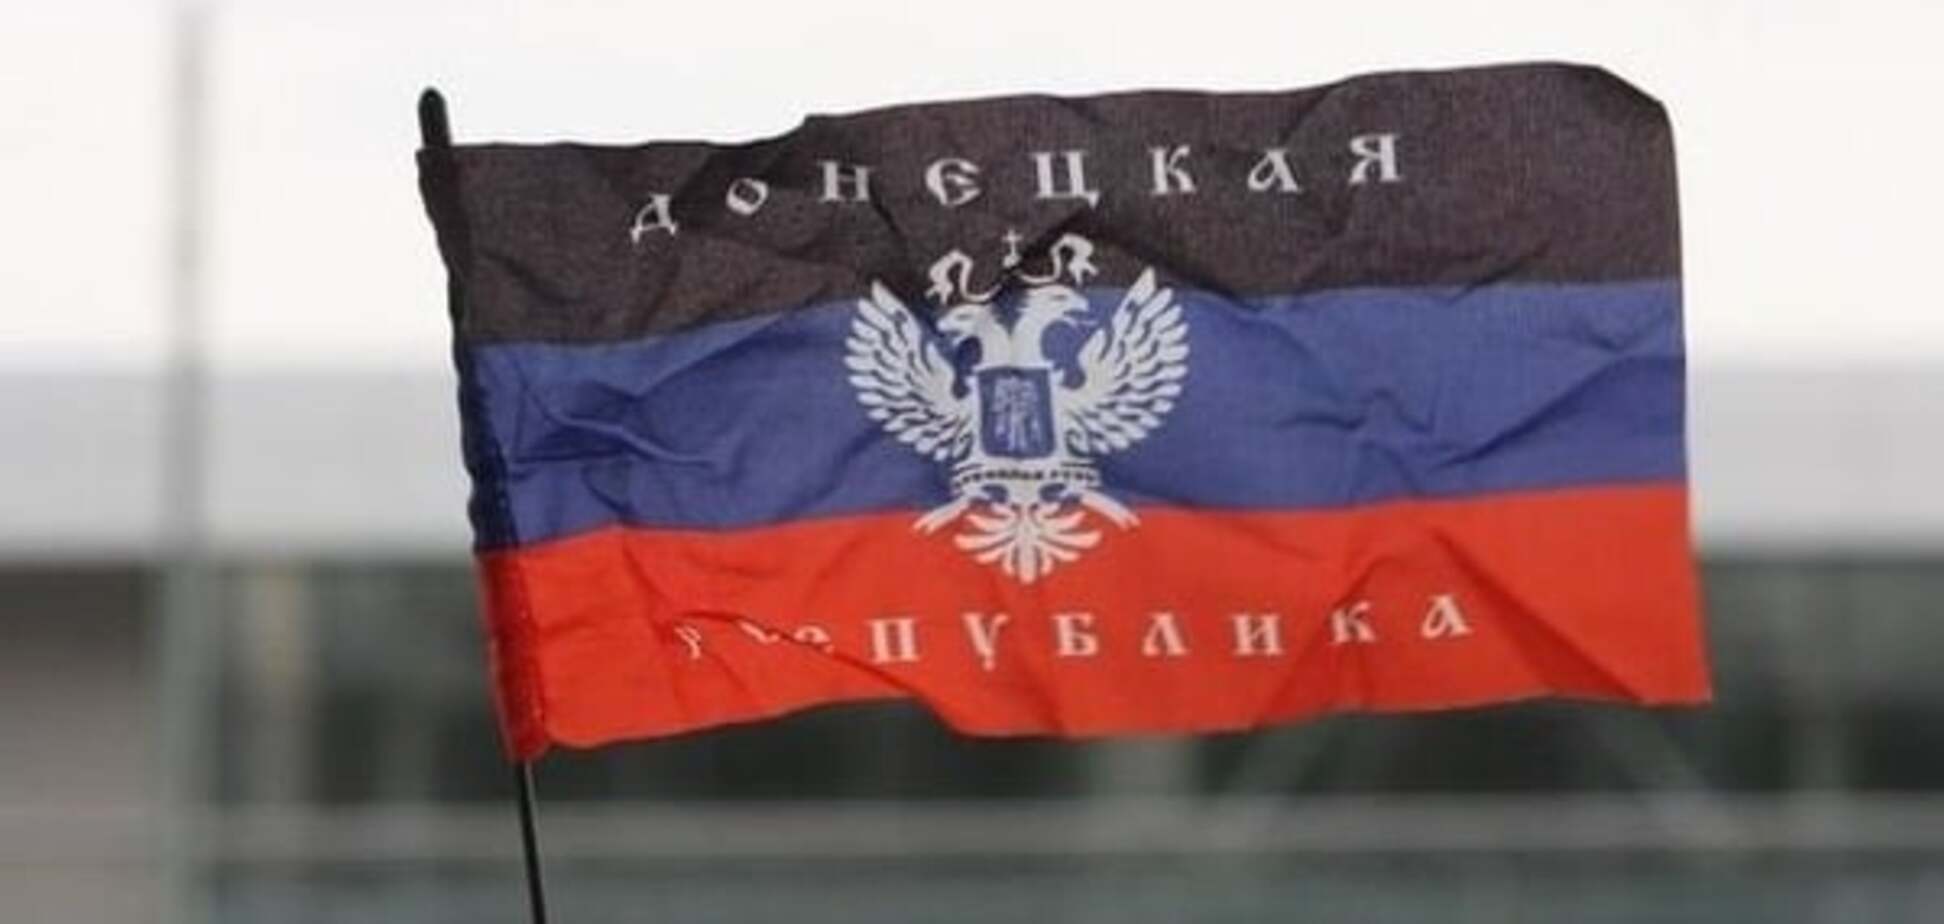 Запахло жареным: террористы на Донбассе увеличили производство гробов